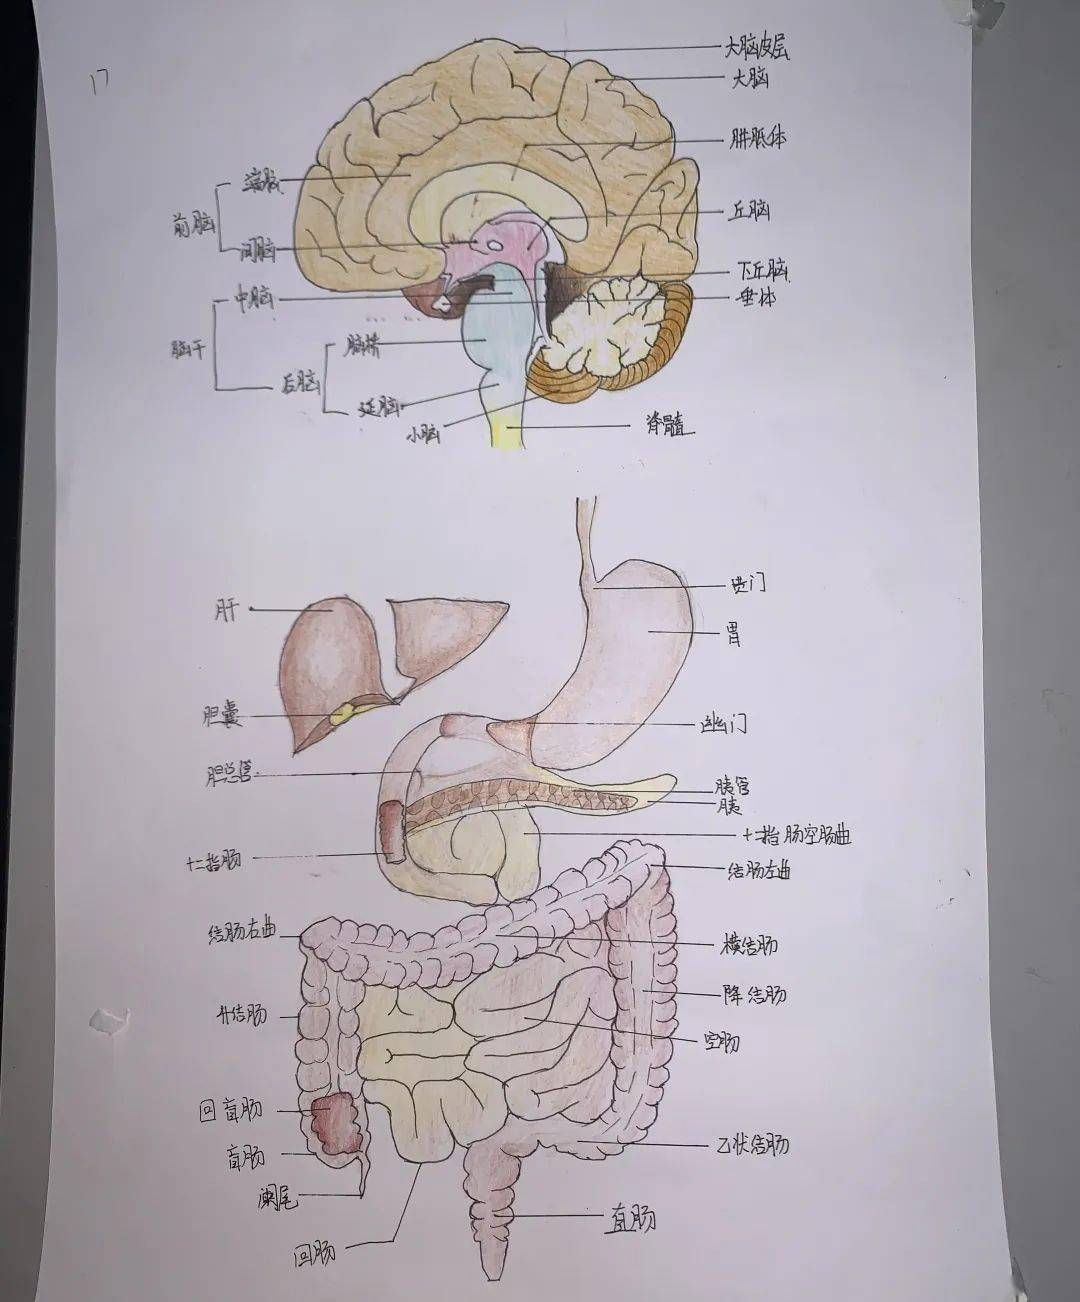 北京卫生职业学院医学技术系学生解剖绘图大赛完美落幕